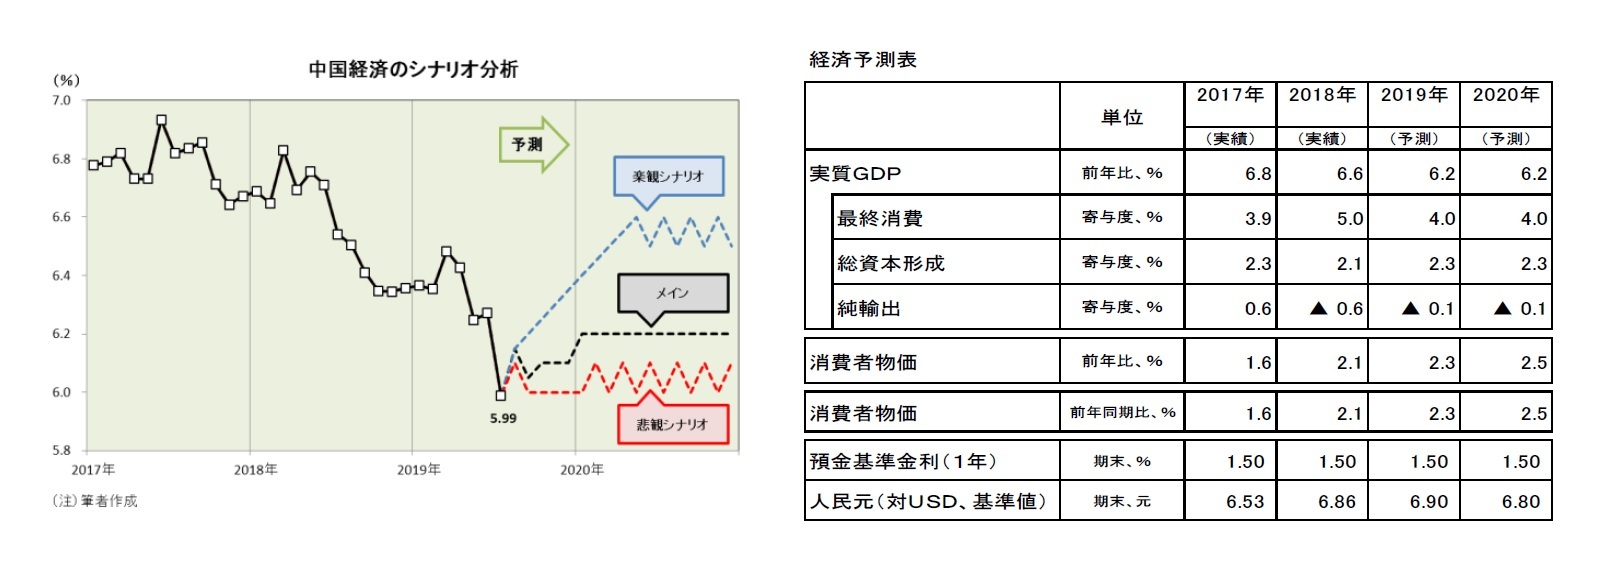 中国経済のシナリオ分析/経済予測表